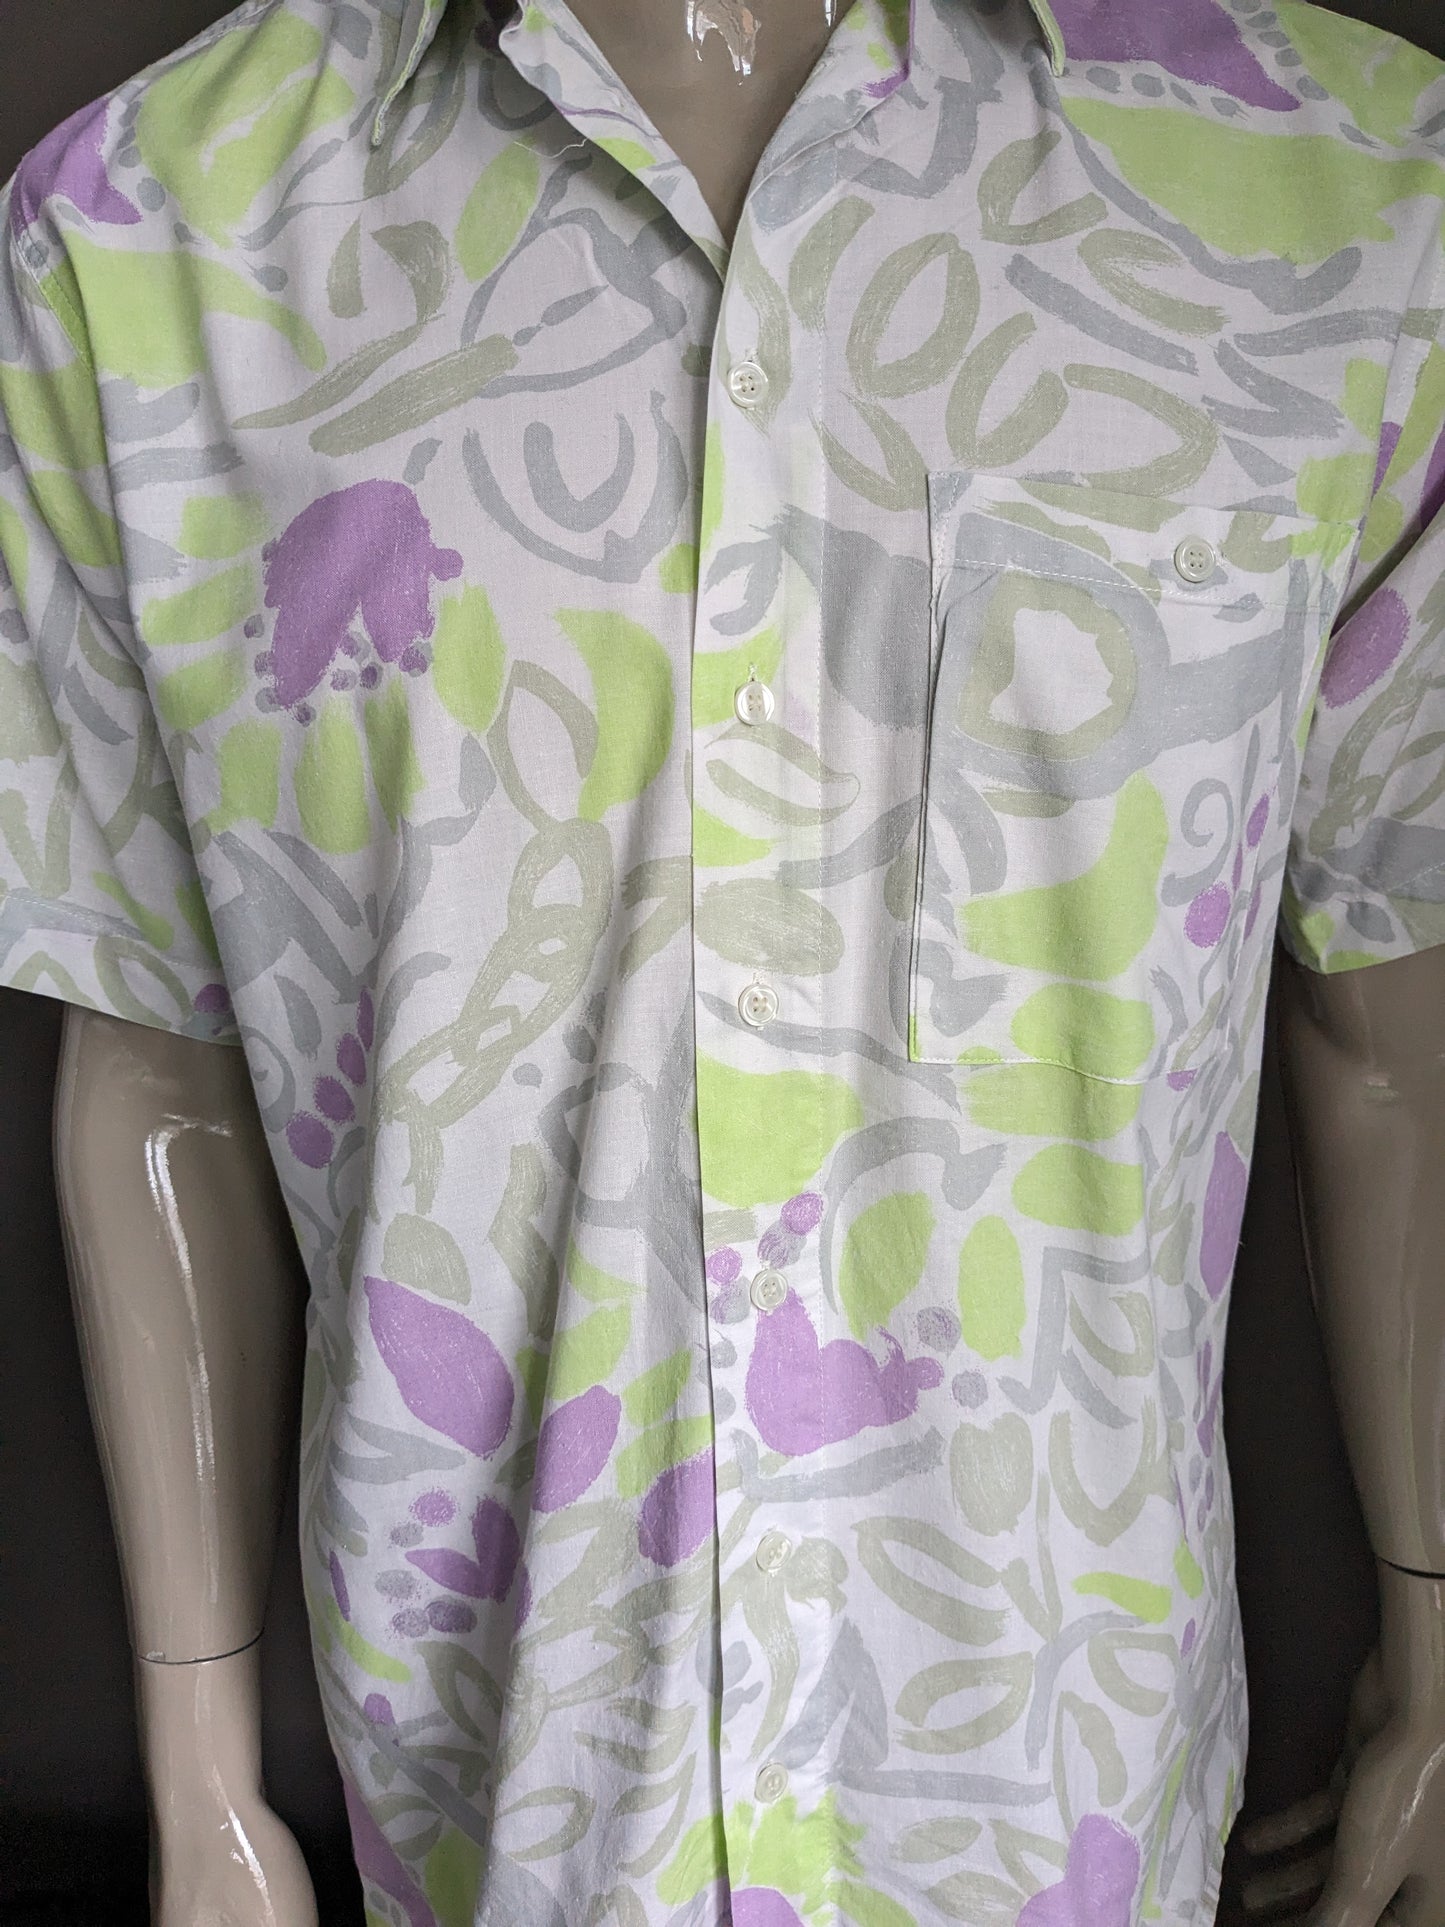 Manche courte de la chemise Silverstone des années 90. Impression blanche verte violet. Taille L.